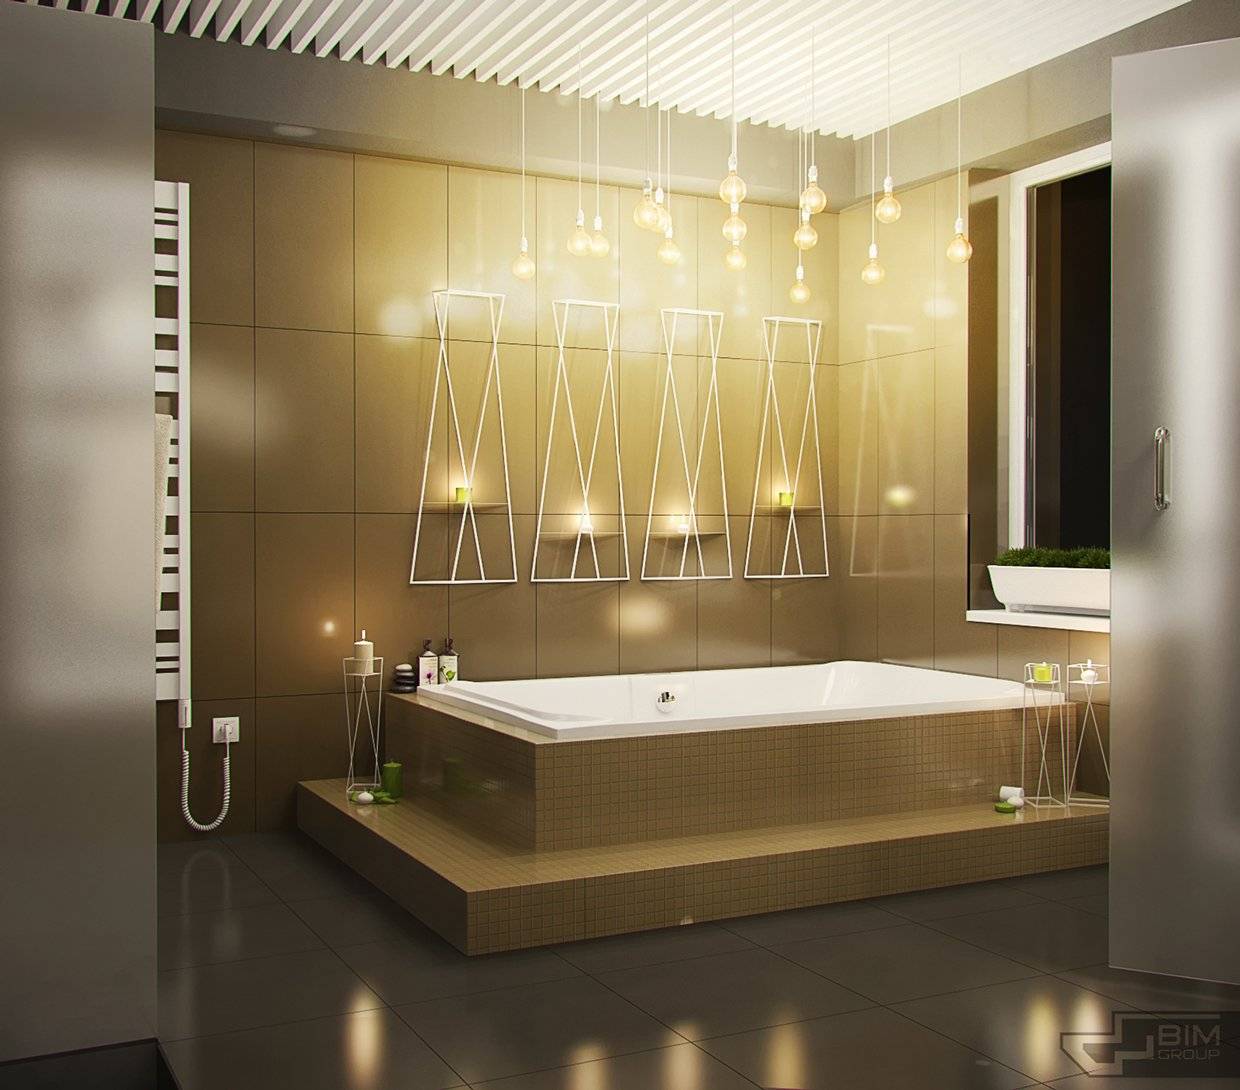 Освещение в ванной комнате - какой выбрать свет в ванну
освещение в ванной комнате - какой выбрать свет в ванну